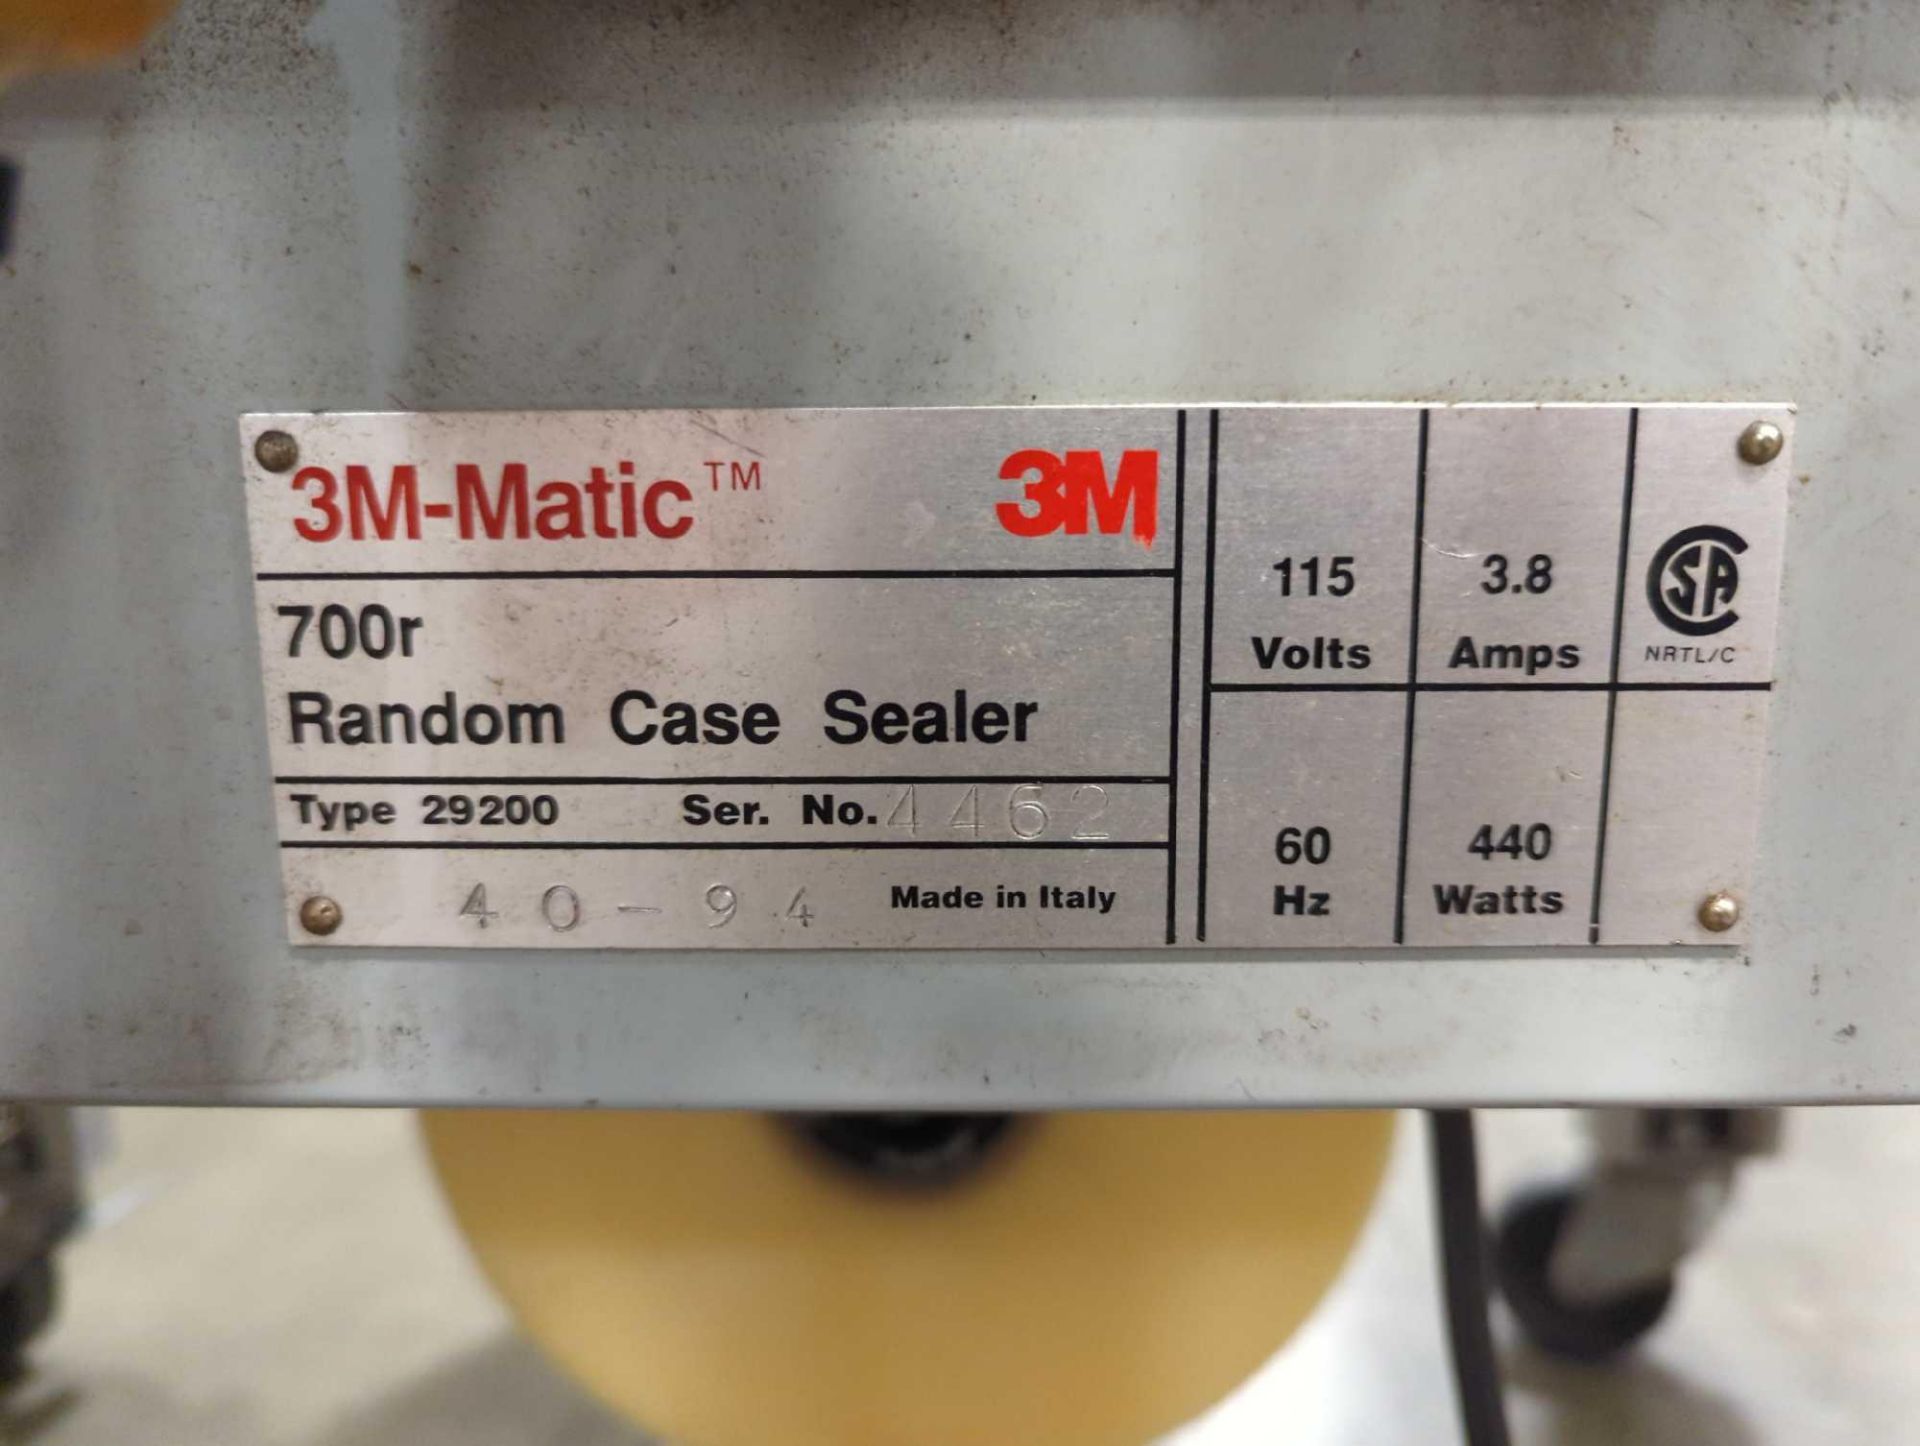 3M-MATIC 700r Random Case Sealer - Image 10 of 11